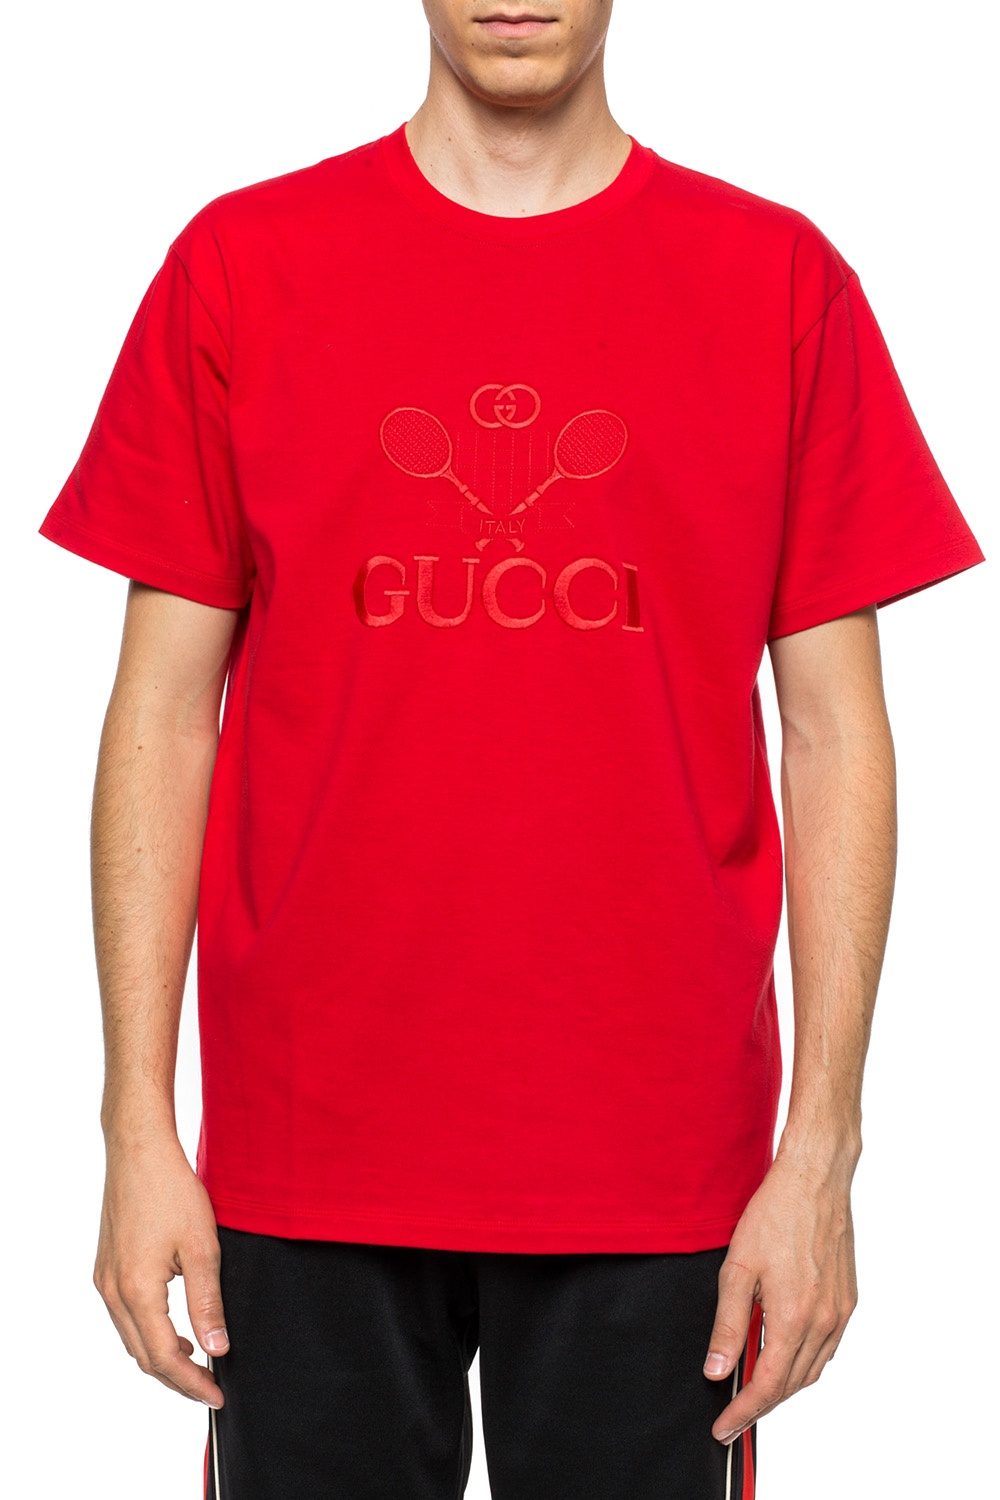 La collaboration Gucci x Palace en détail - shirt Gucci